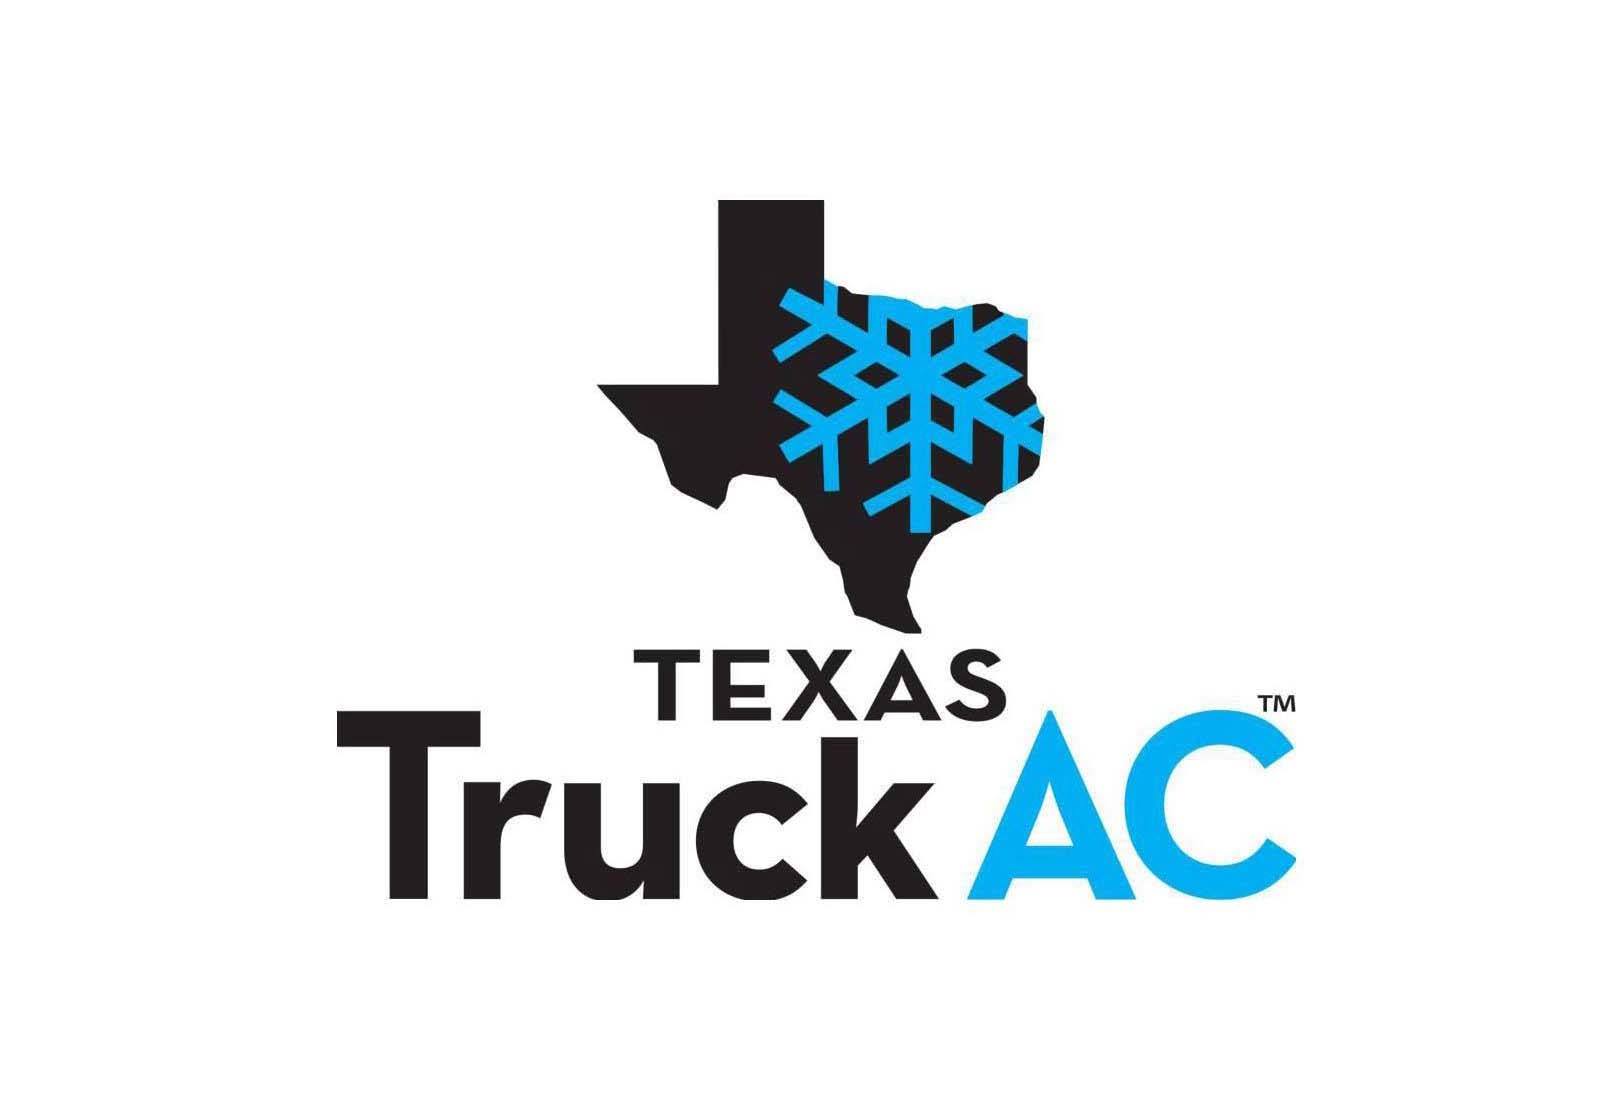 https://taevt.org/wp-content/uploads/2022/03/texas-truck-ac.jpeg